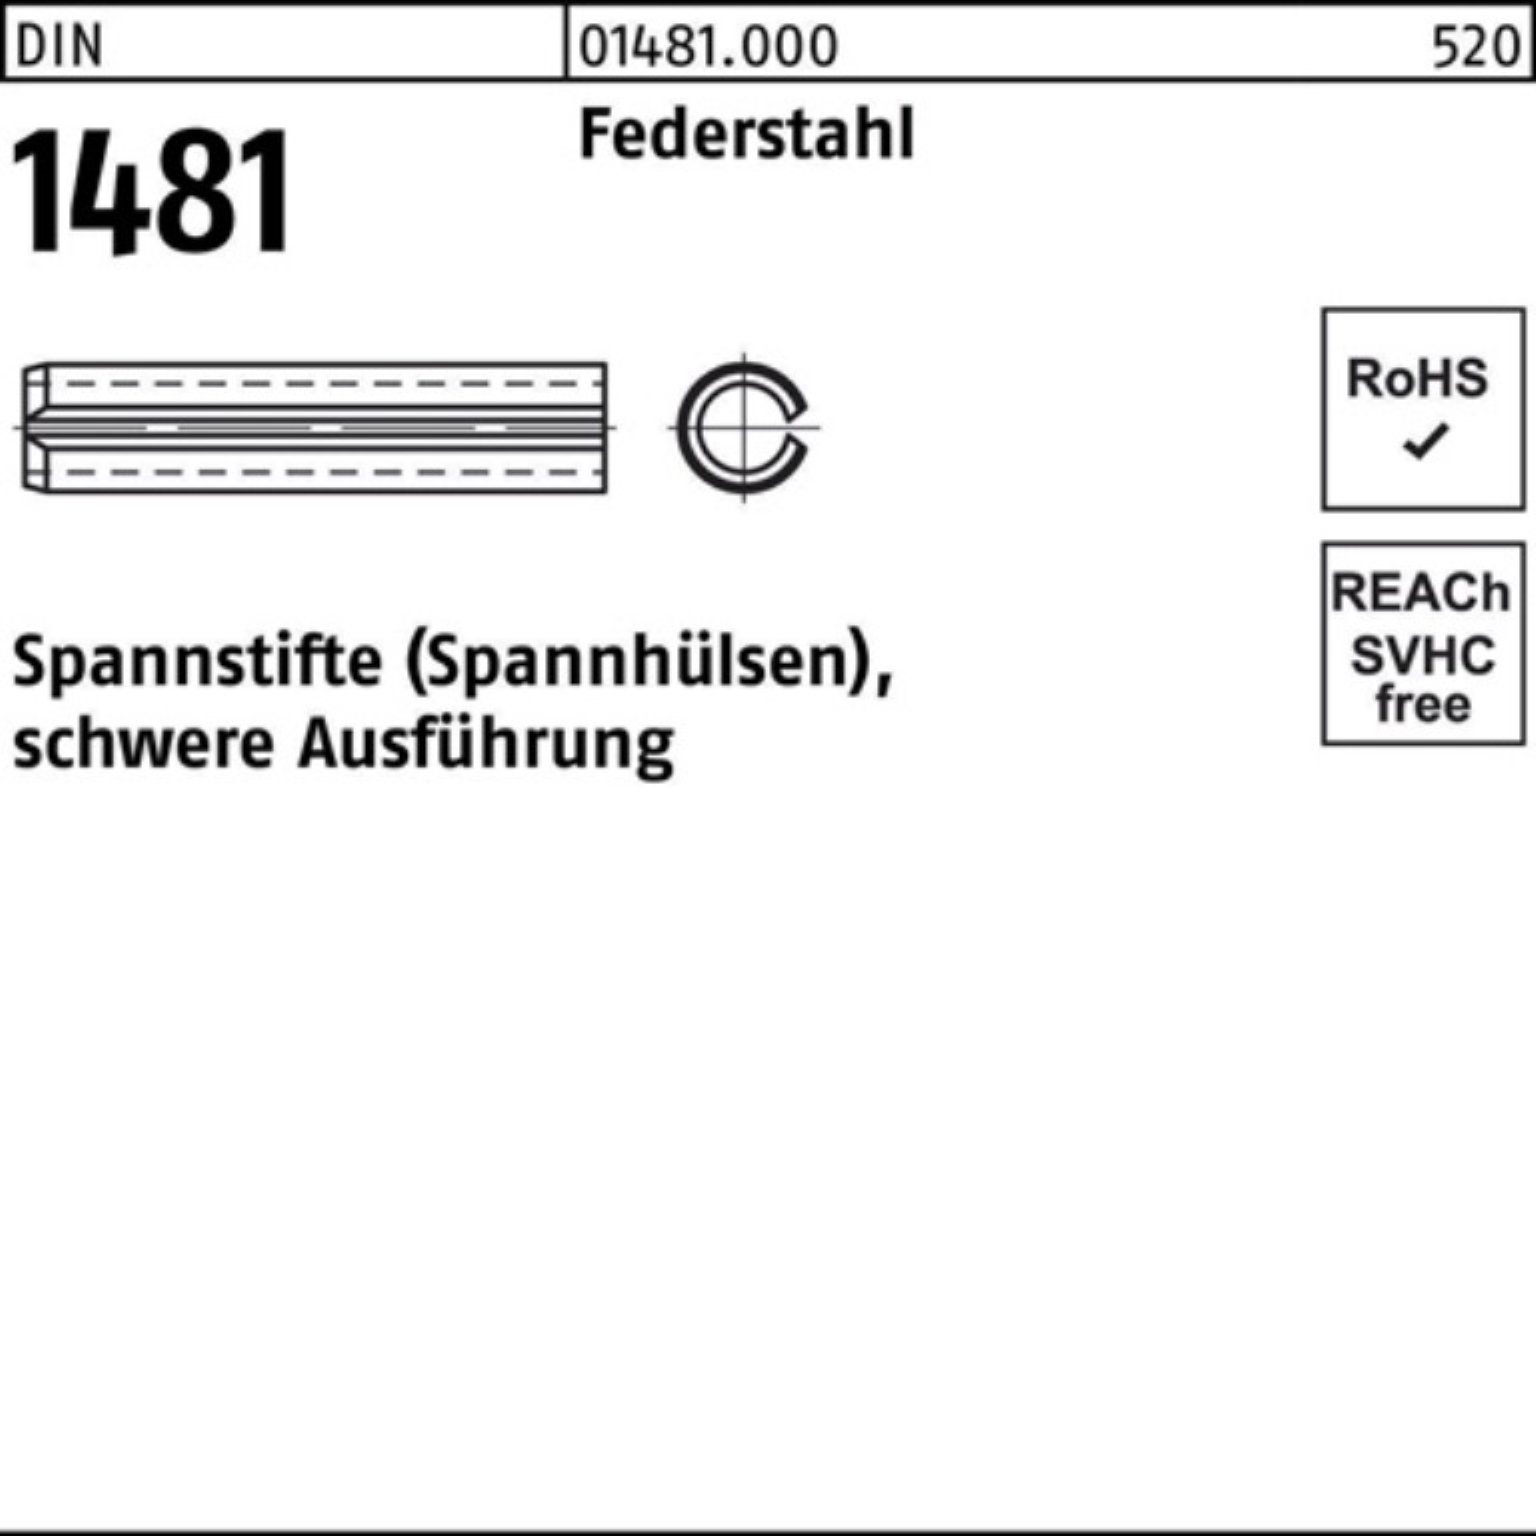 14x Spannstift Reyher schwere Ausführung Federstahl 100er Spannstift DIN 140 1481 Pack